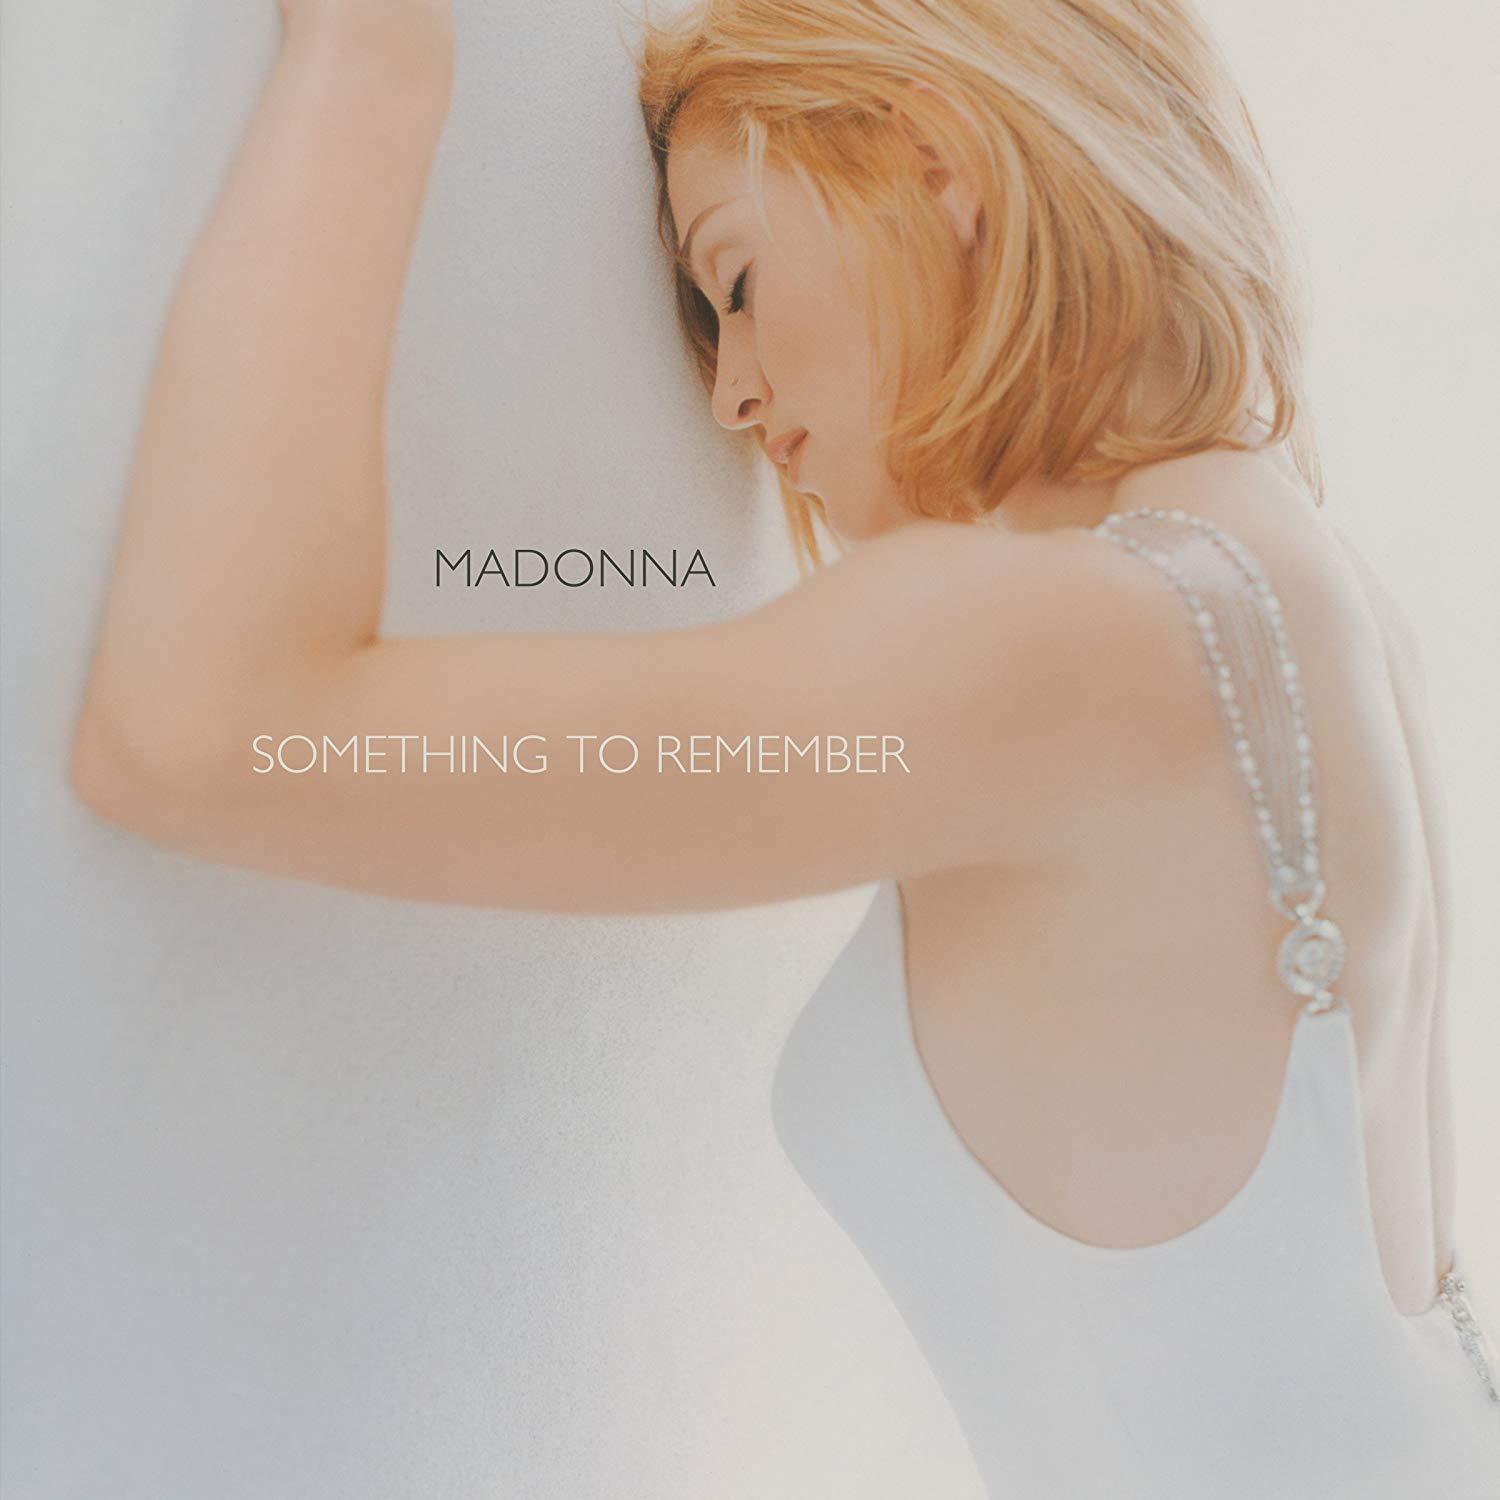 Madonna (マドンナ) 1stバラード・ベスト・アルバム『Something to Remember (ベスト・オブ・マドンナ〜バラード・コレクション〜)』(1995年11月10日発売)高画質CDジャケット画像